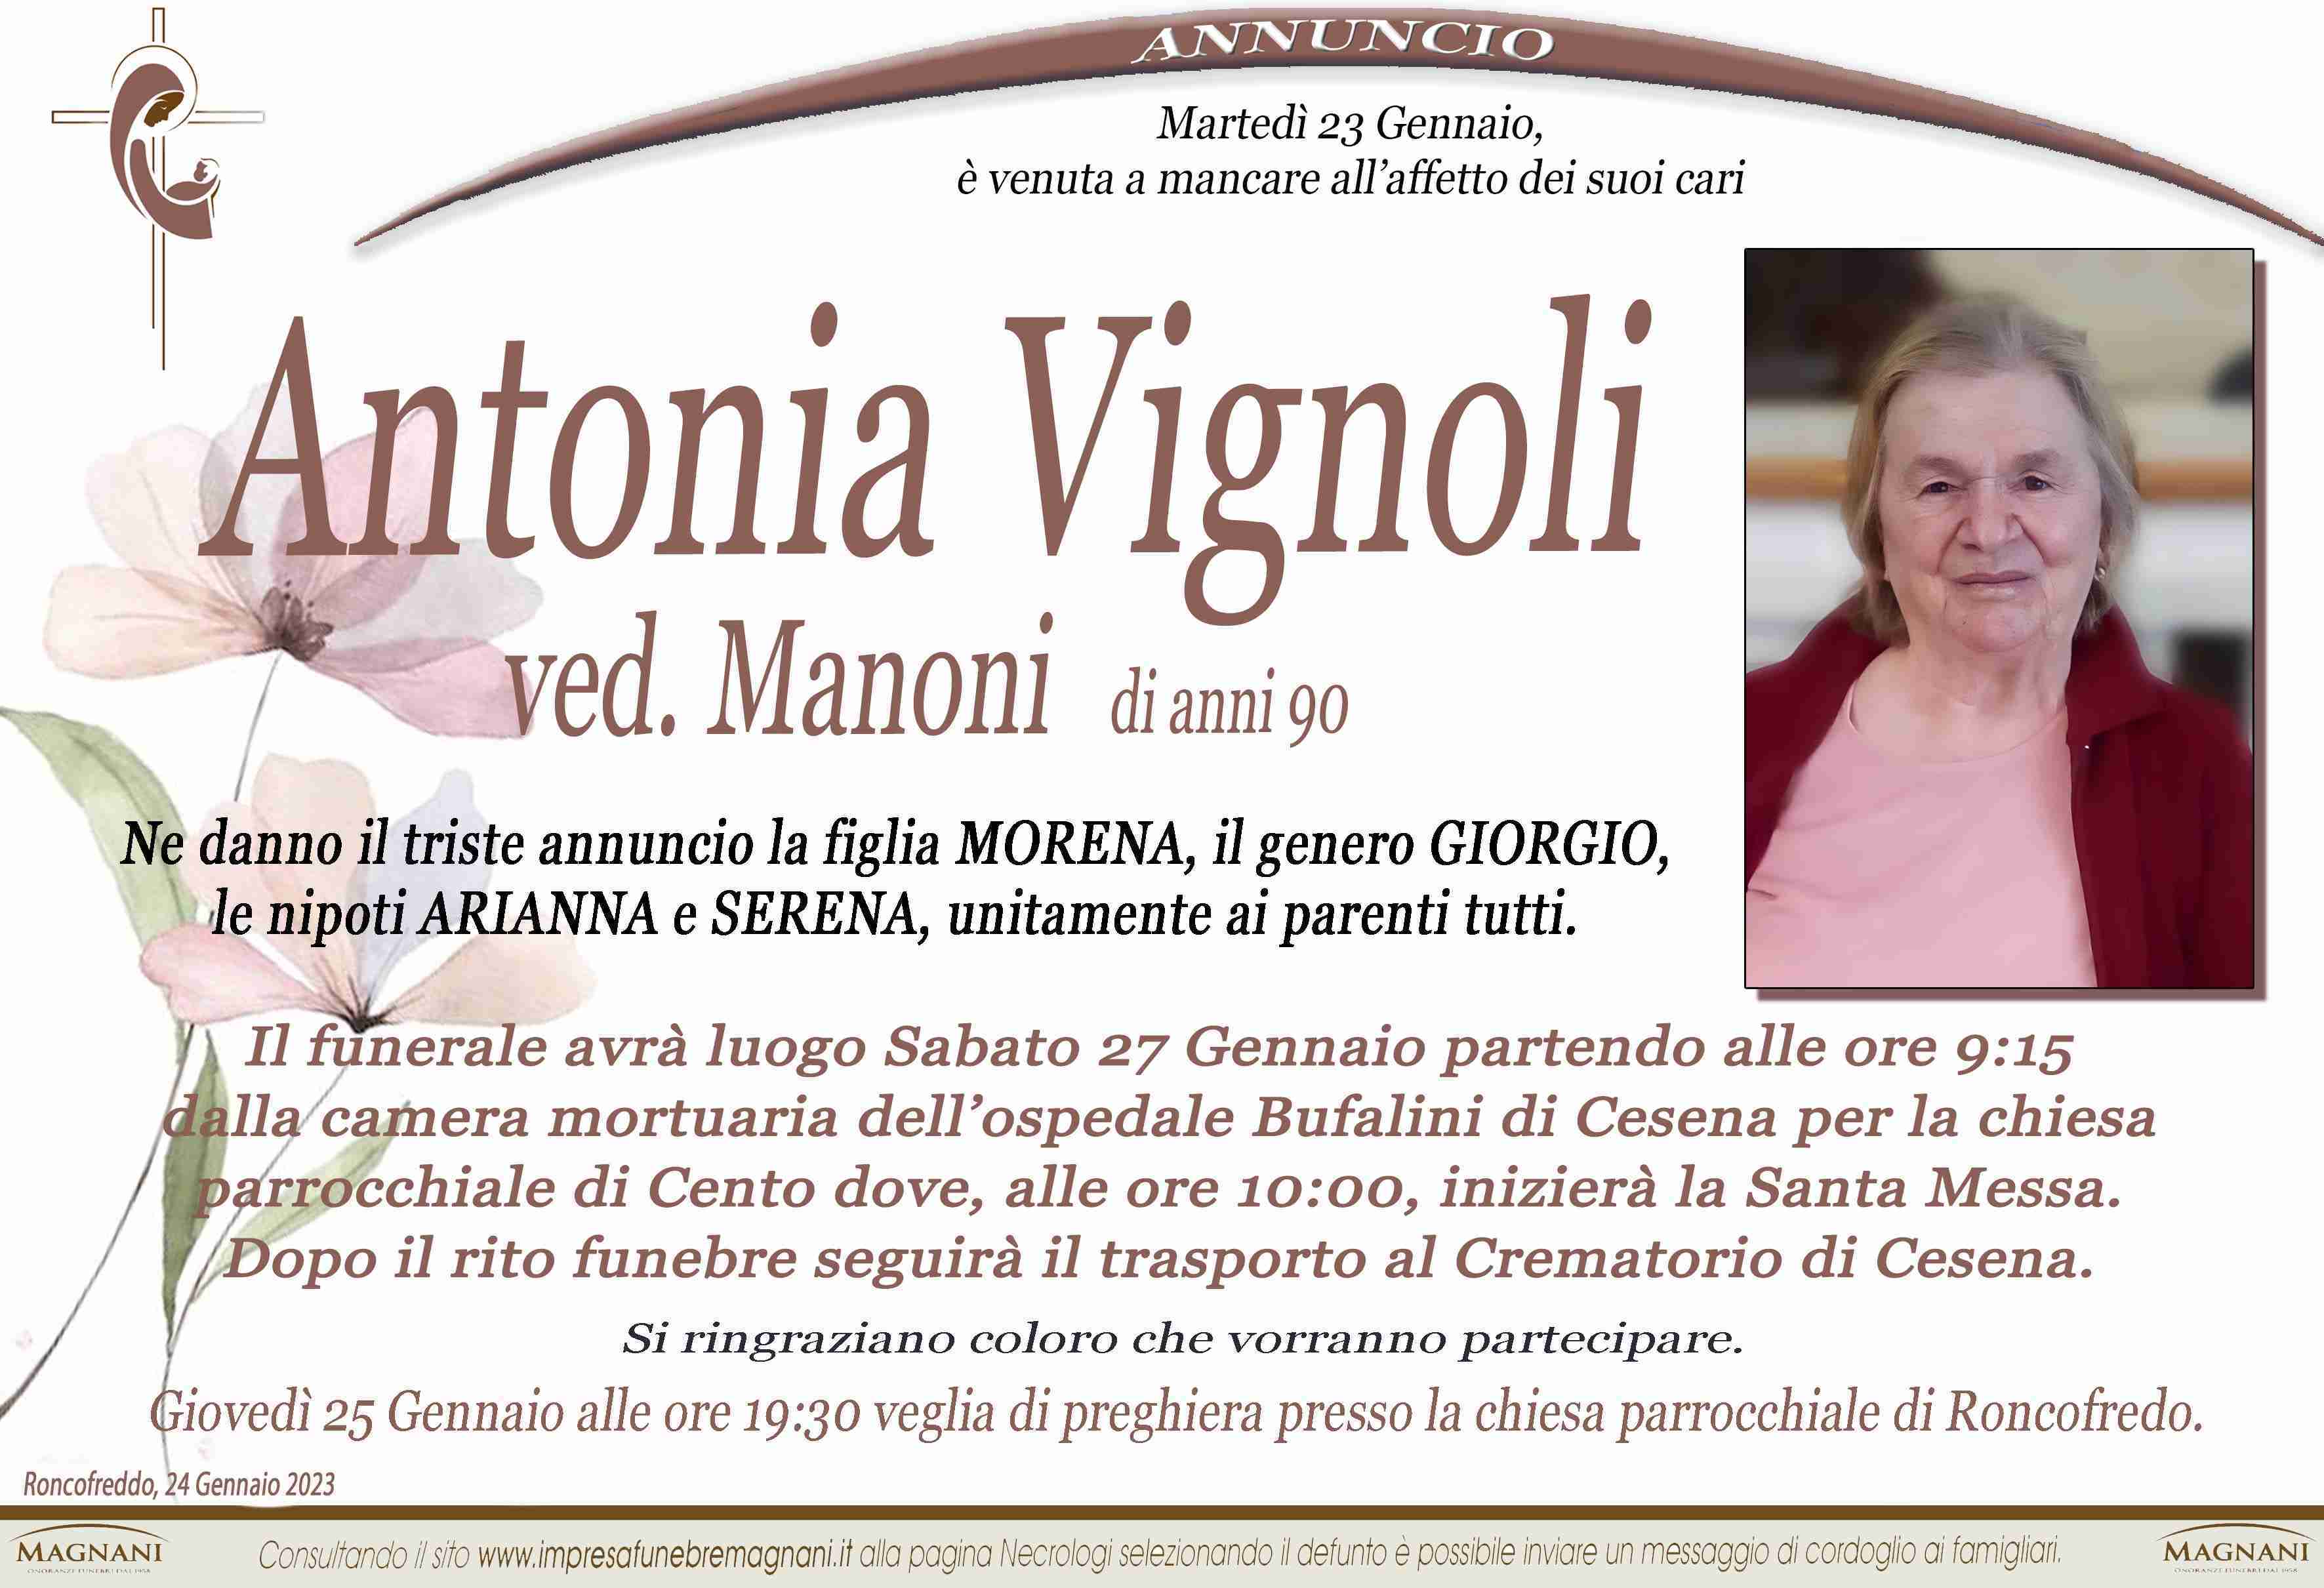 Antonia Vignoli